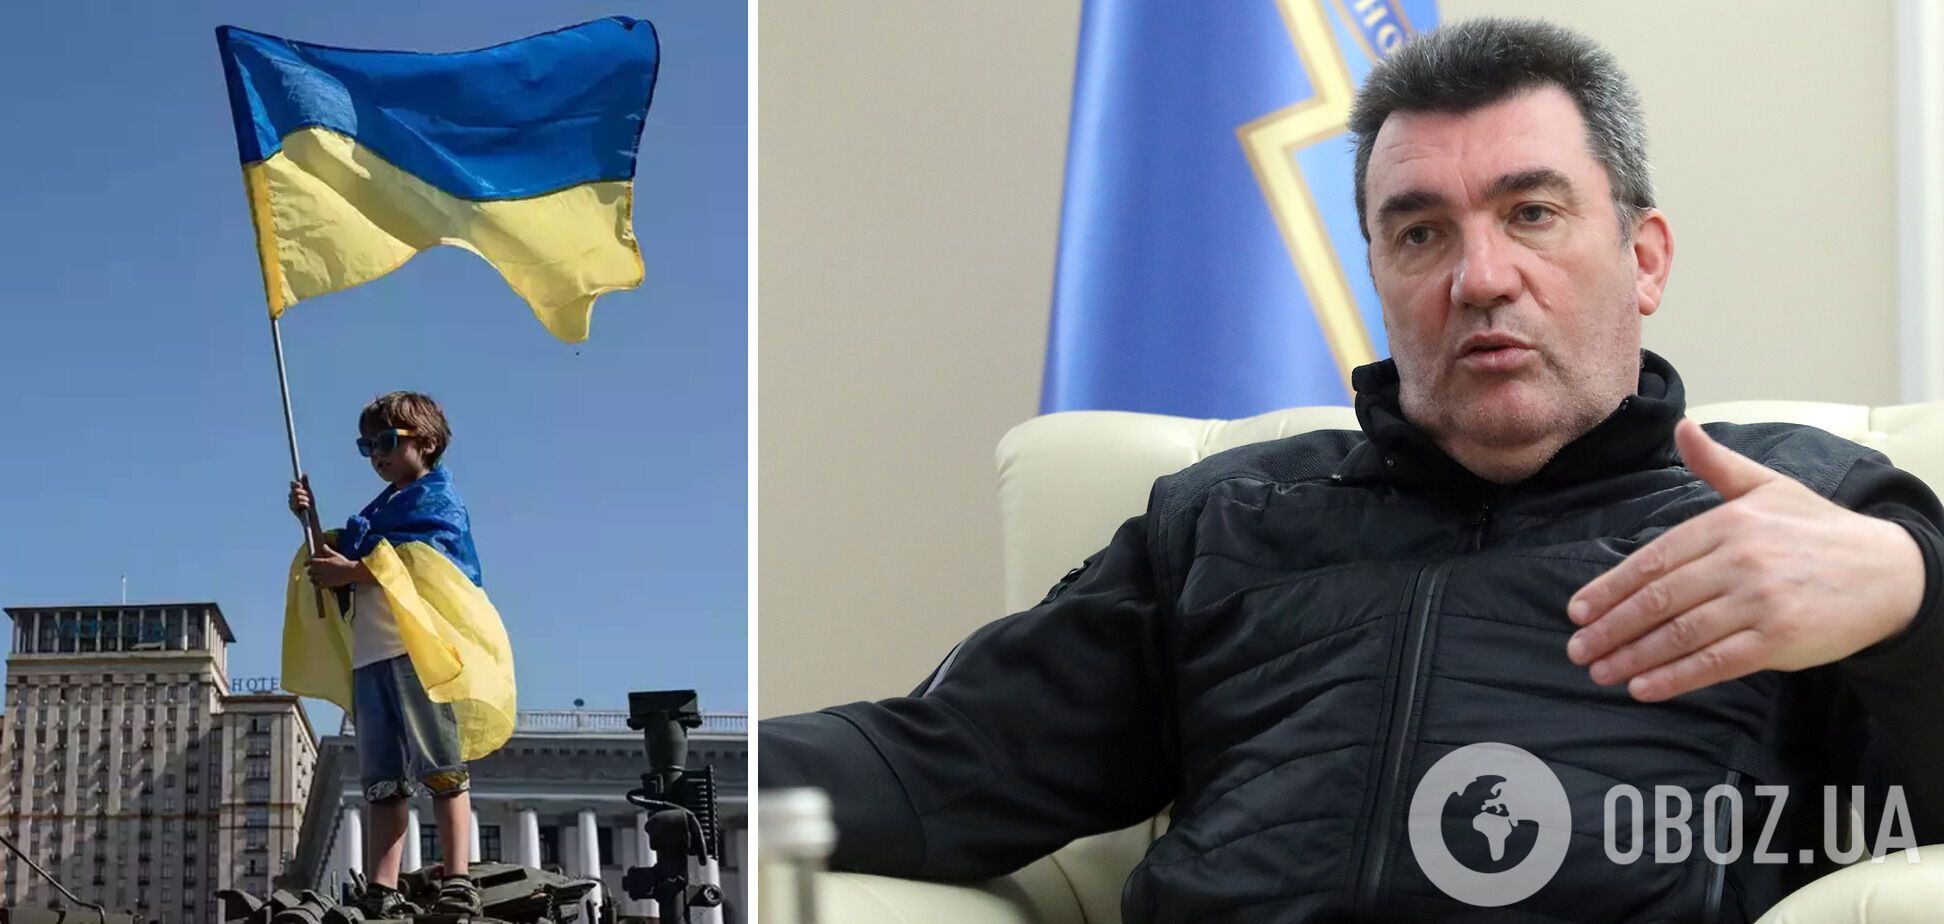 Данилов: украинцы уже добыли в борьбе право быть сильными